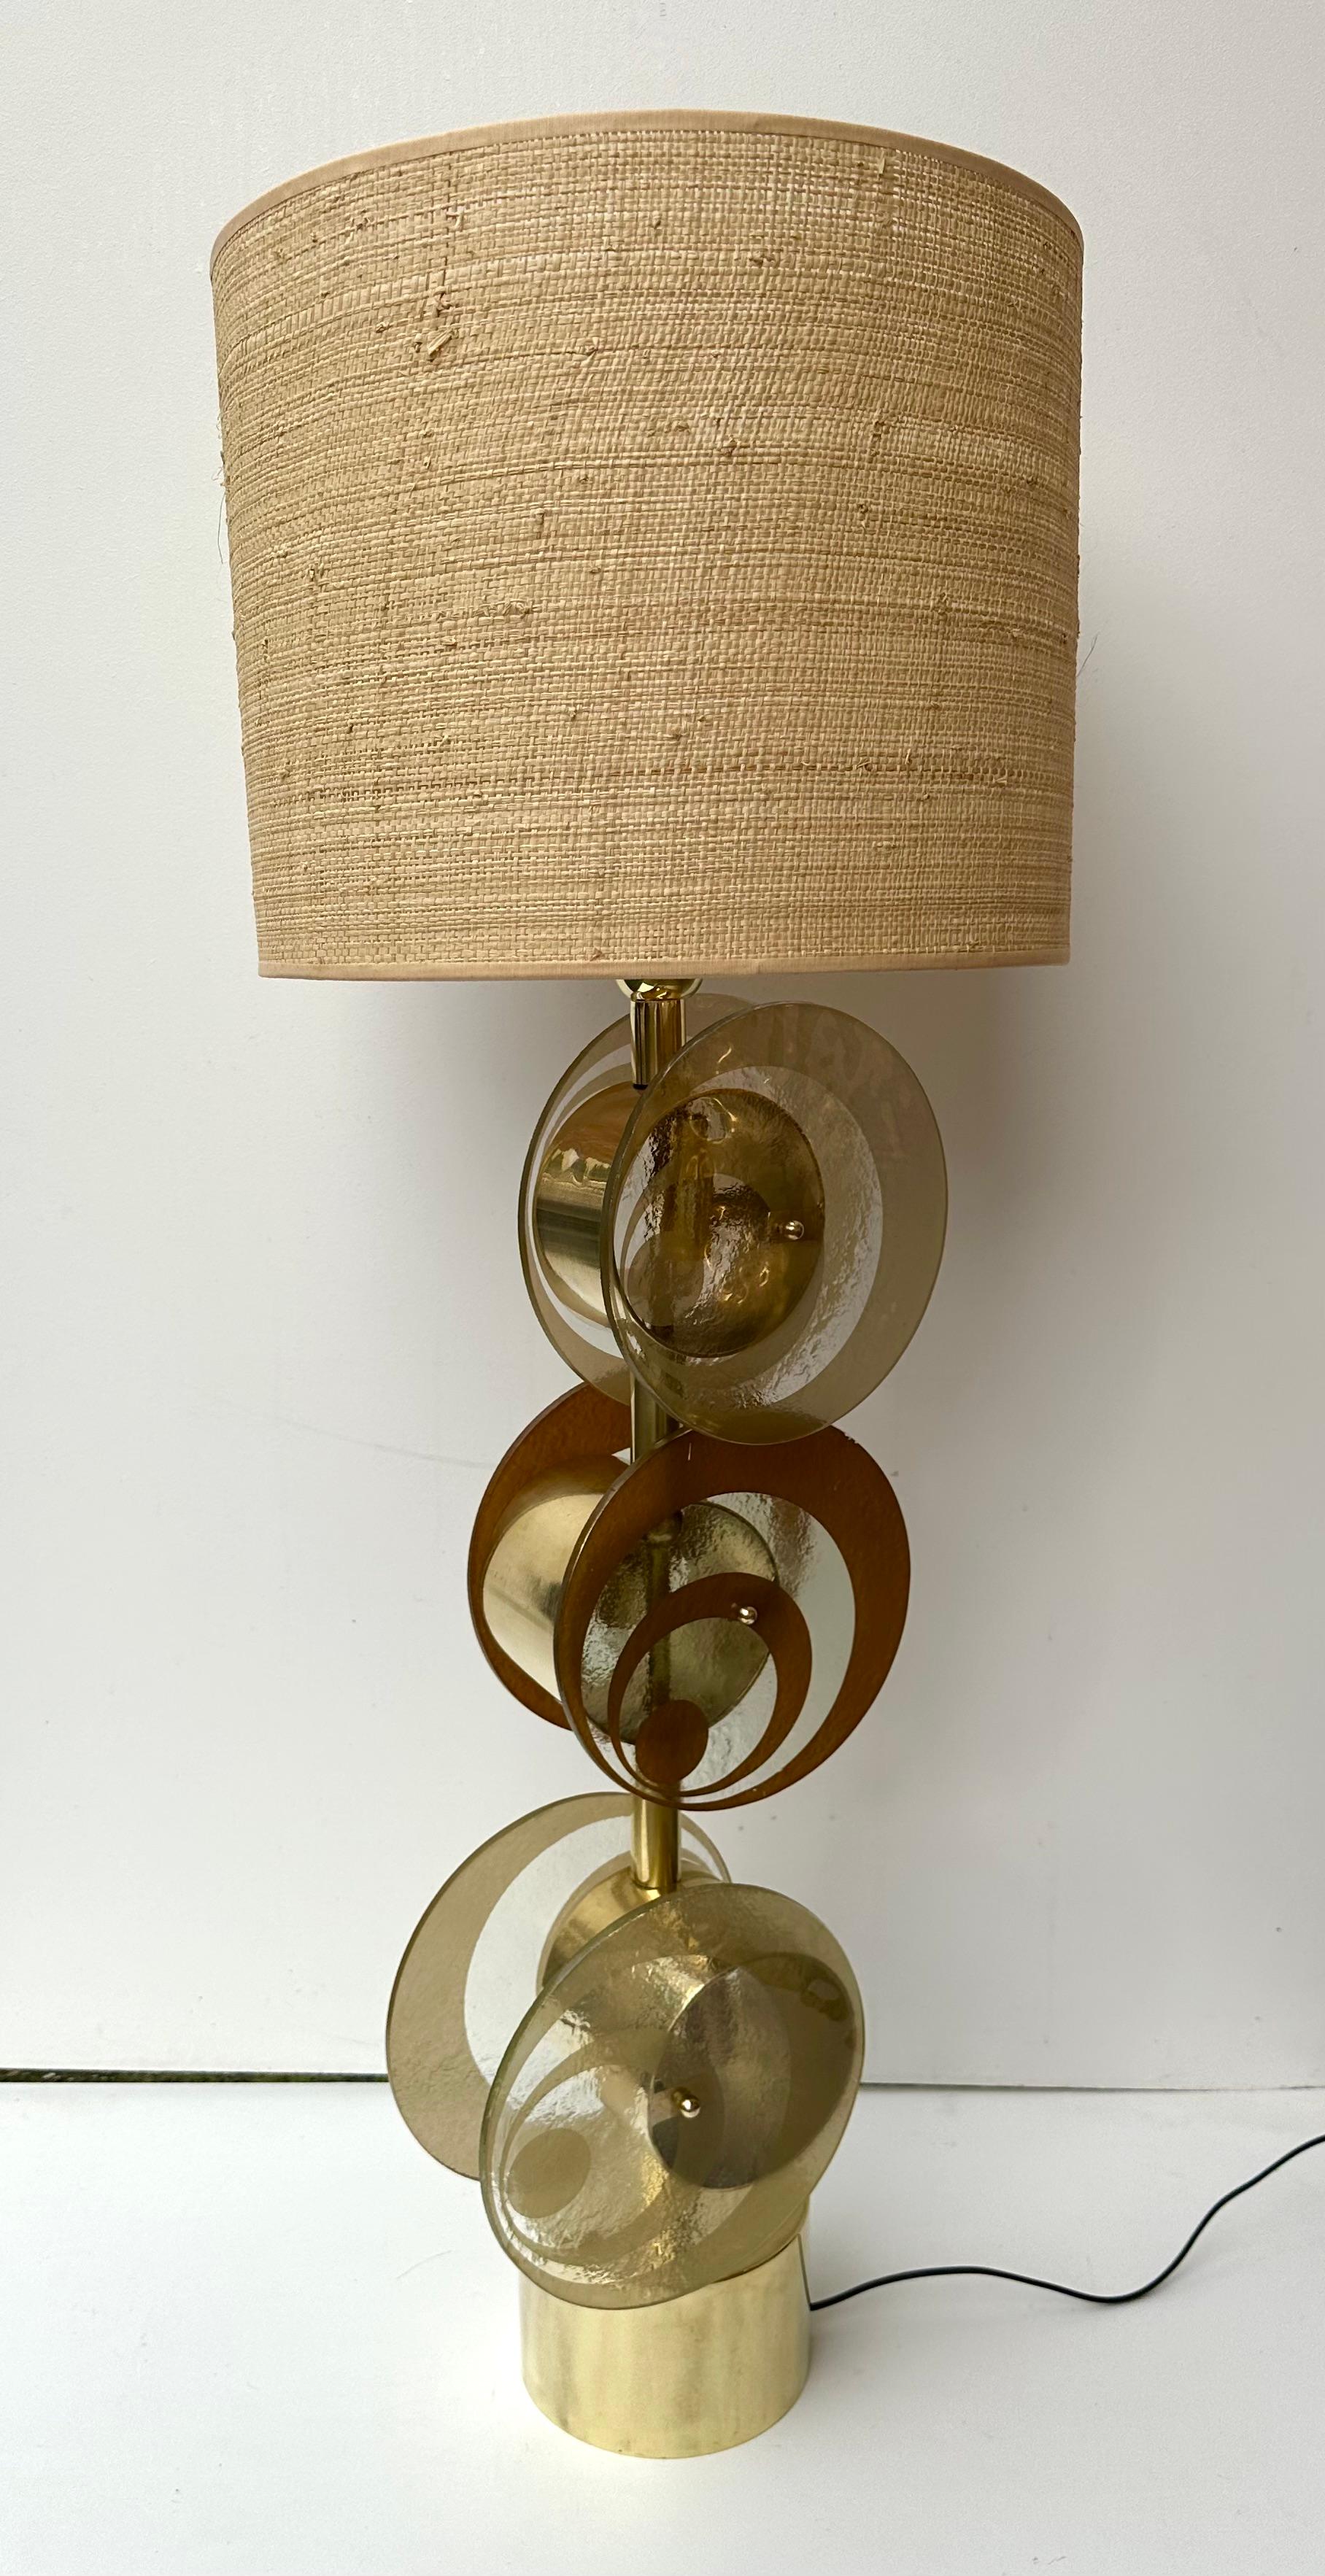 Paire de lampes de table ou de chevet en laiton et disques en spirale en verre de Murano de couleur ambre et sable. Centre de foudre interne des disques en spirale. Travail contemporain d'un petit atelier artisanal italien dans une ambiance